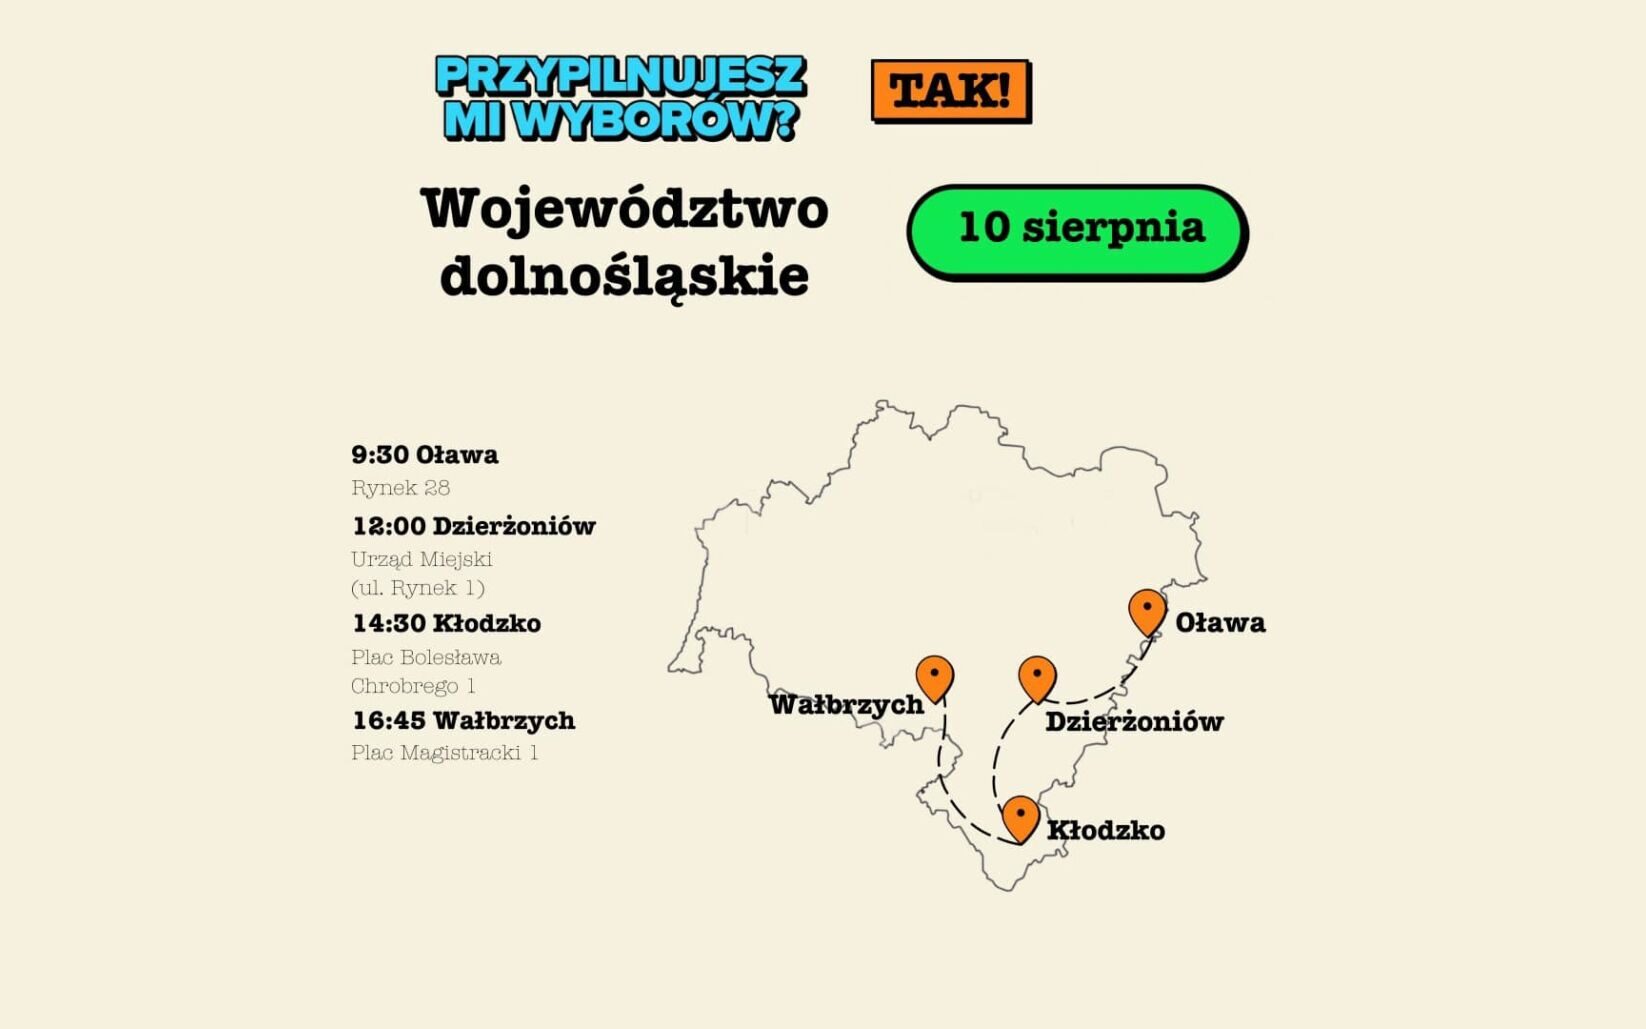 “Przypilnujesz mi wyborów?” Spotkania na Dolnym Śląsku już w ten czwartek! /fot. Platforma Obywatelska